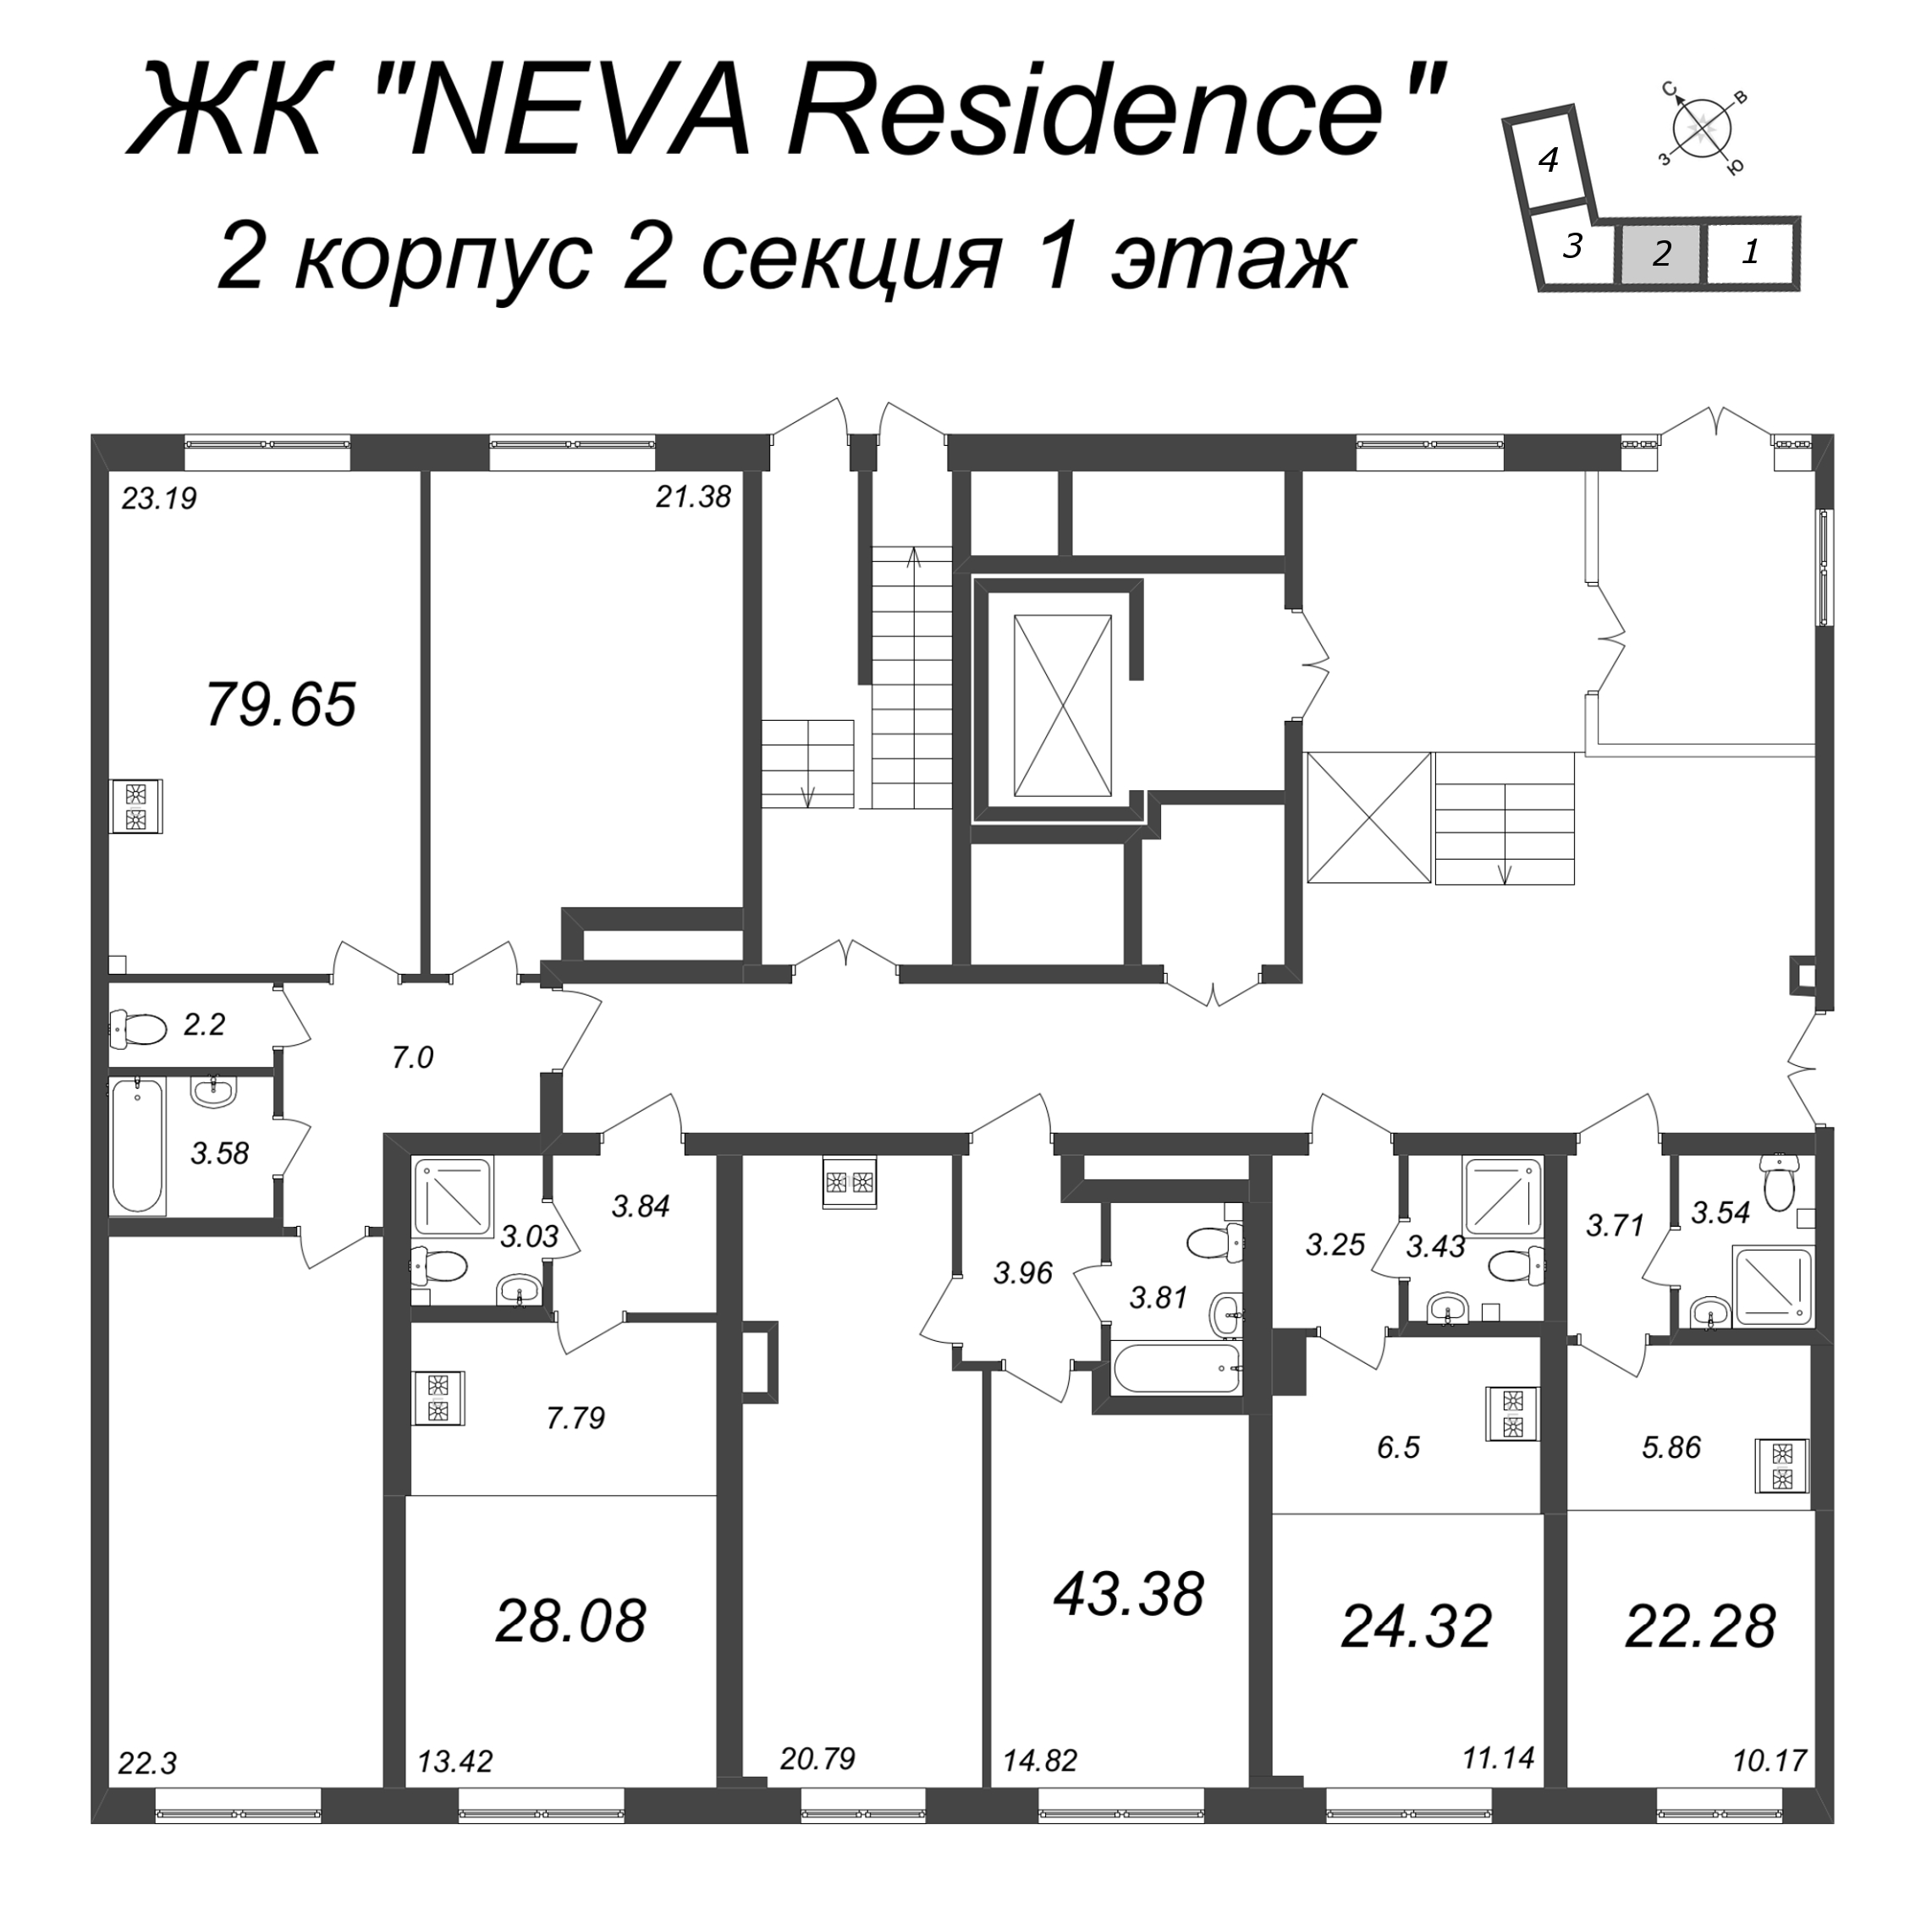 2-комнатная (Евро) квартира, 43.38 м² в ЖК "Neva Residence" - планировка этажа